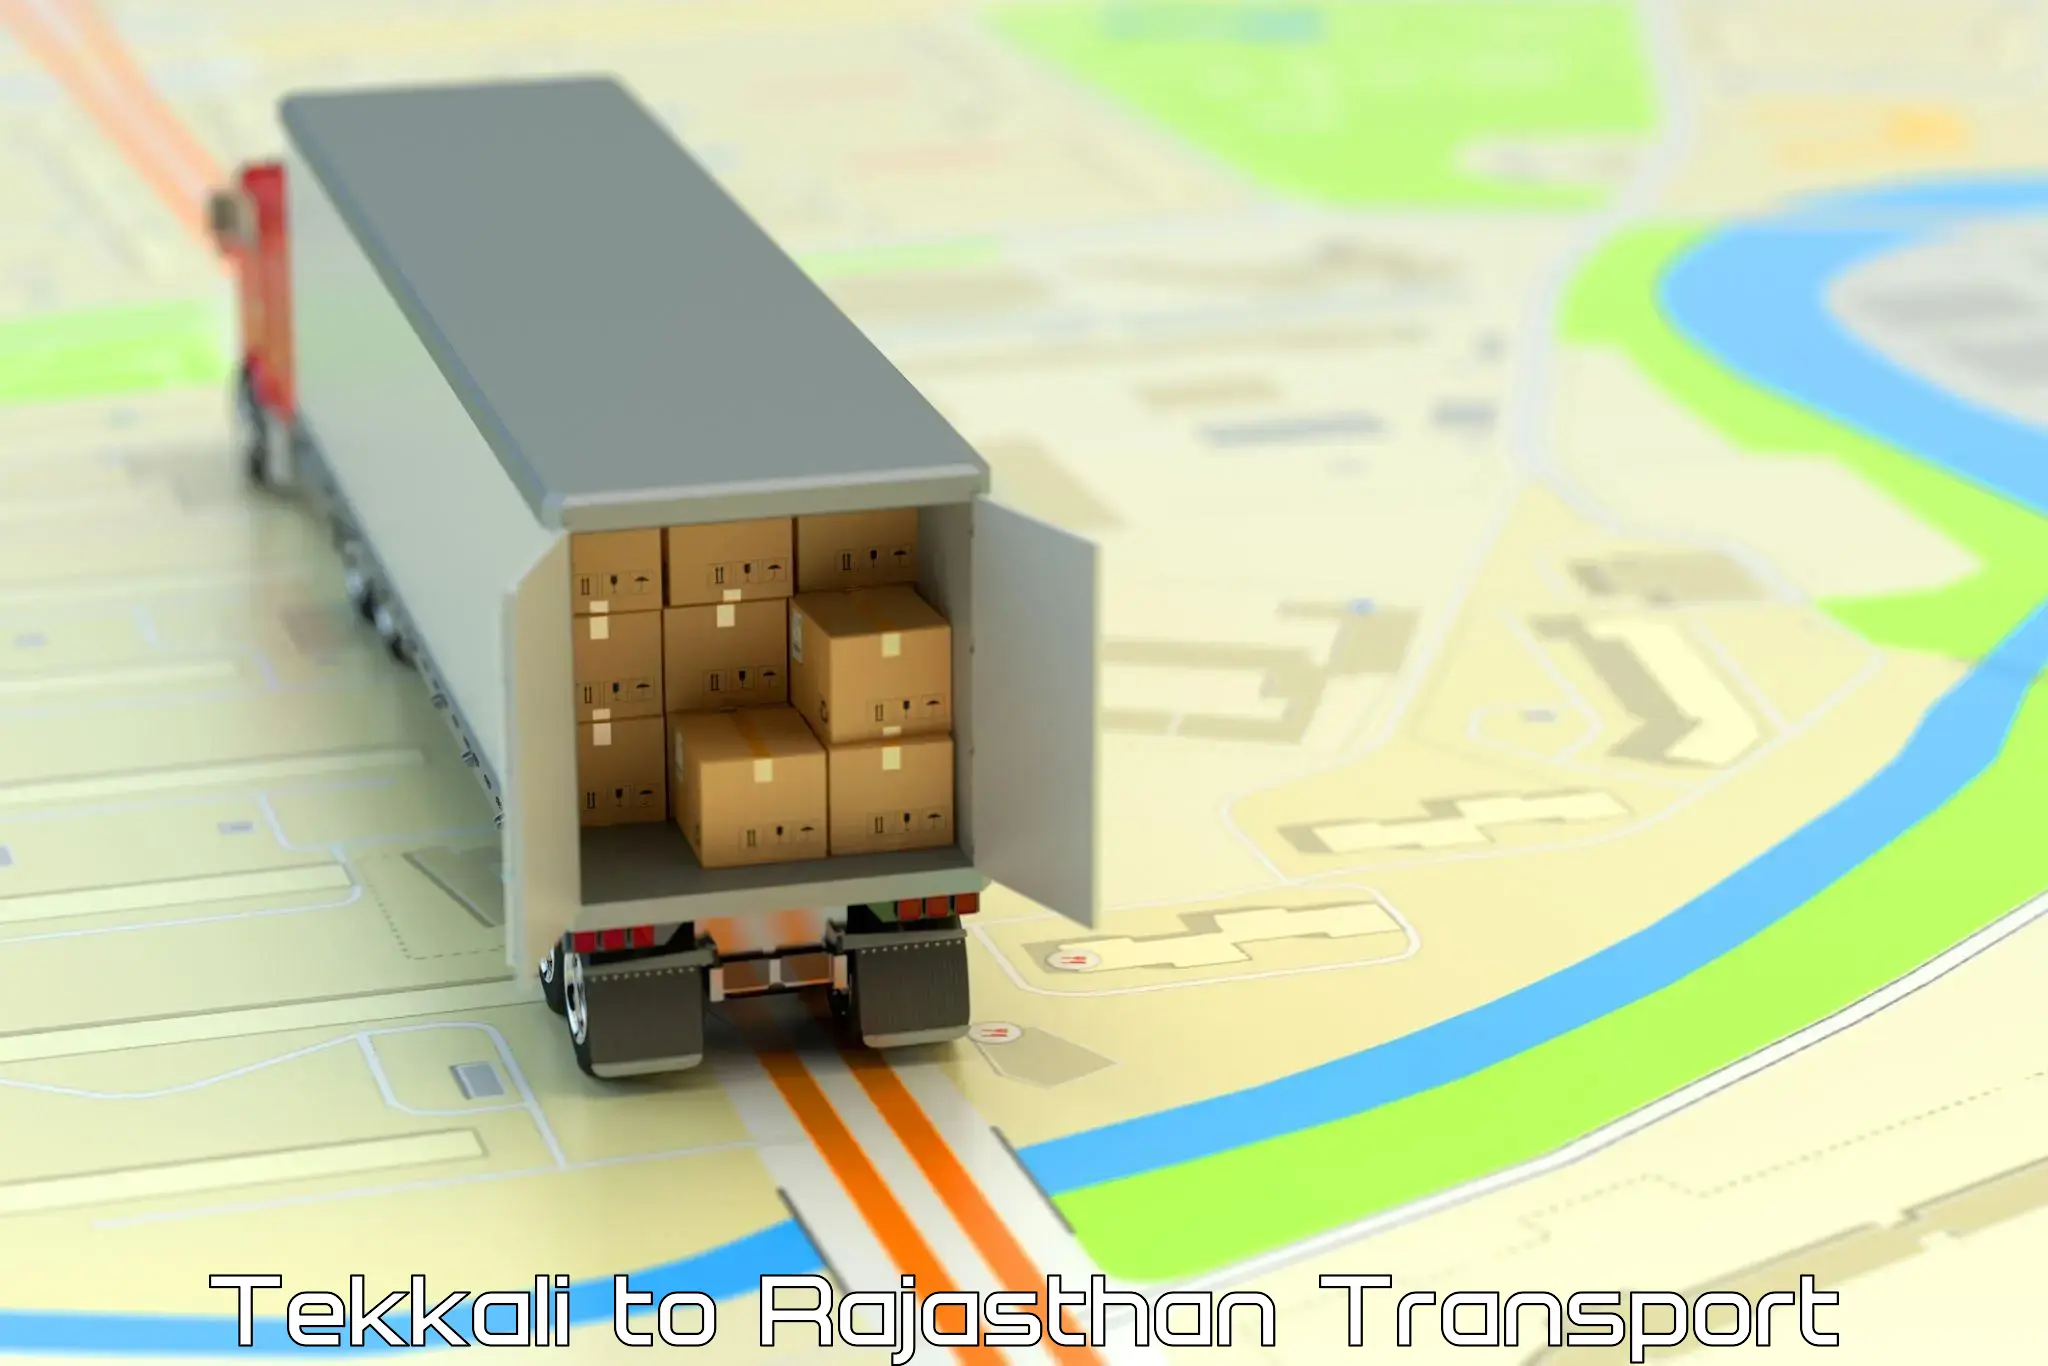 Container transport service Tekkali to Khinwara